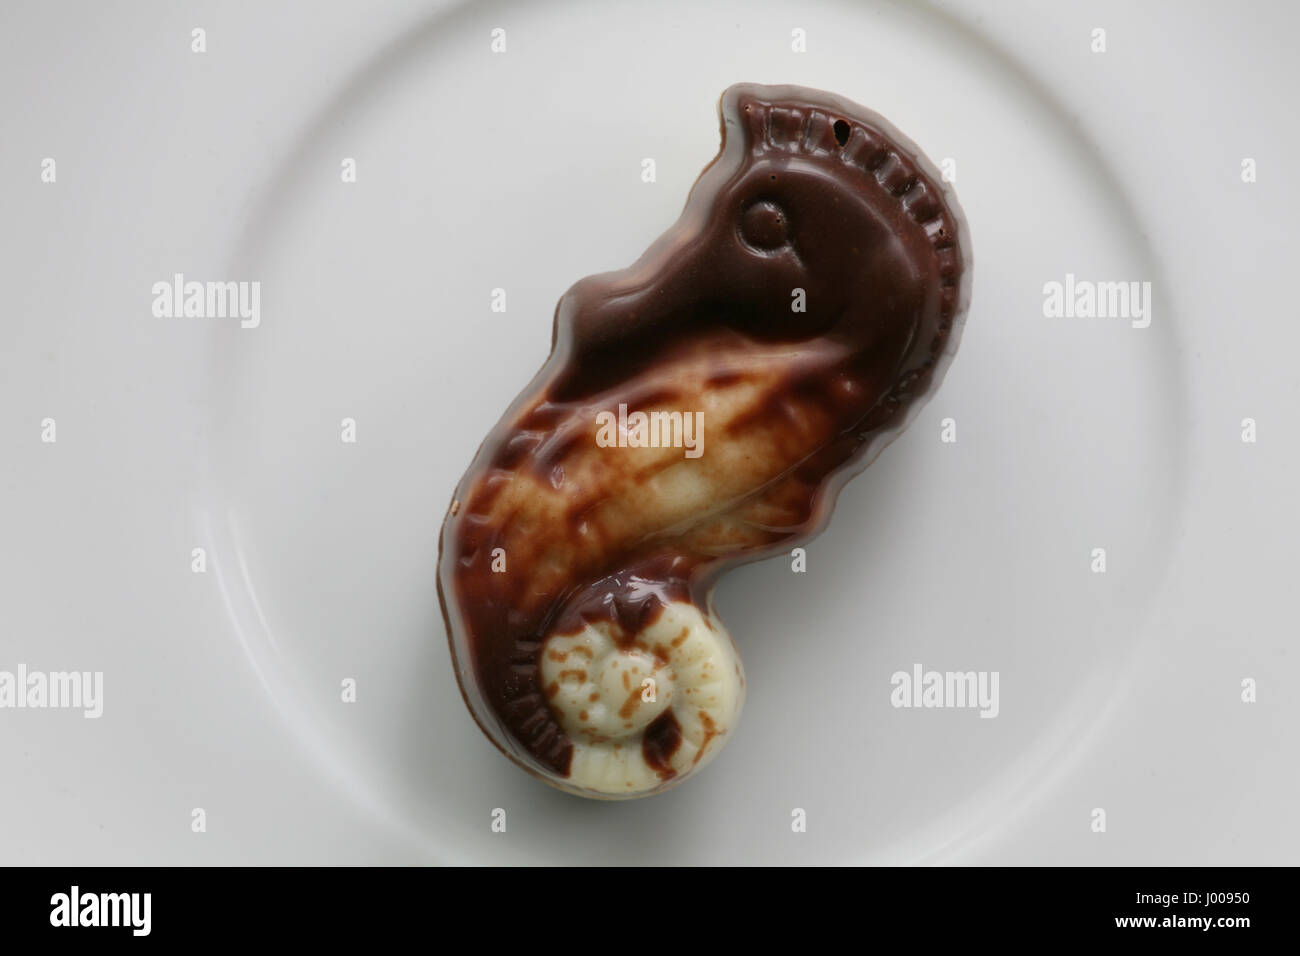 Guylian Chocolate Seashells Dark Praline 225G - Tesco Groceries